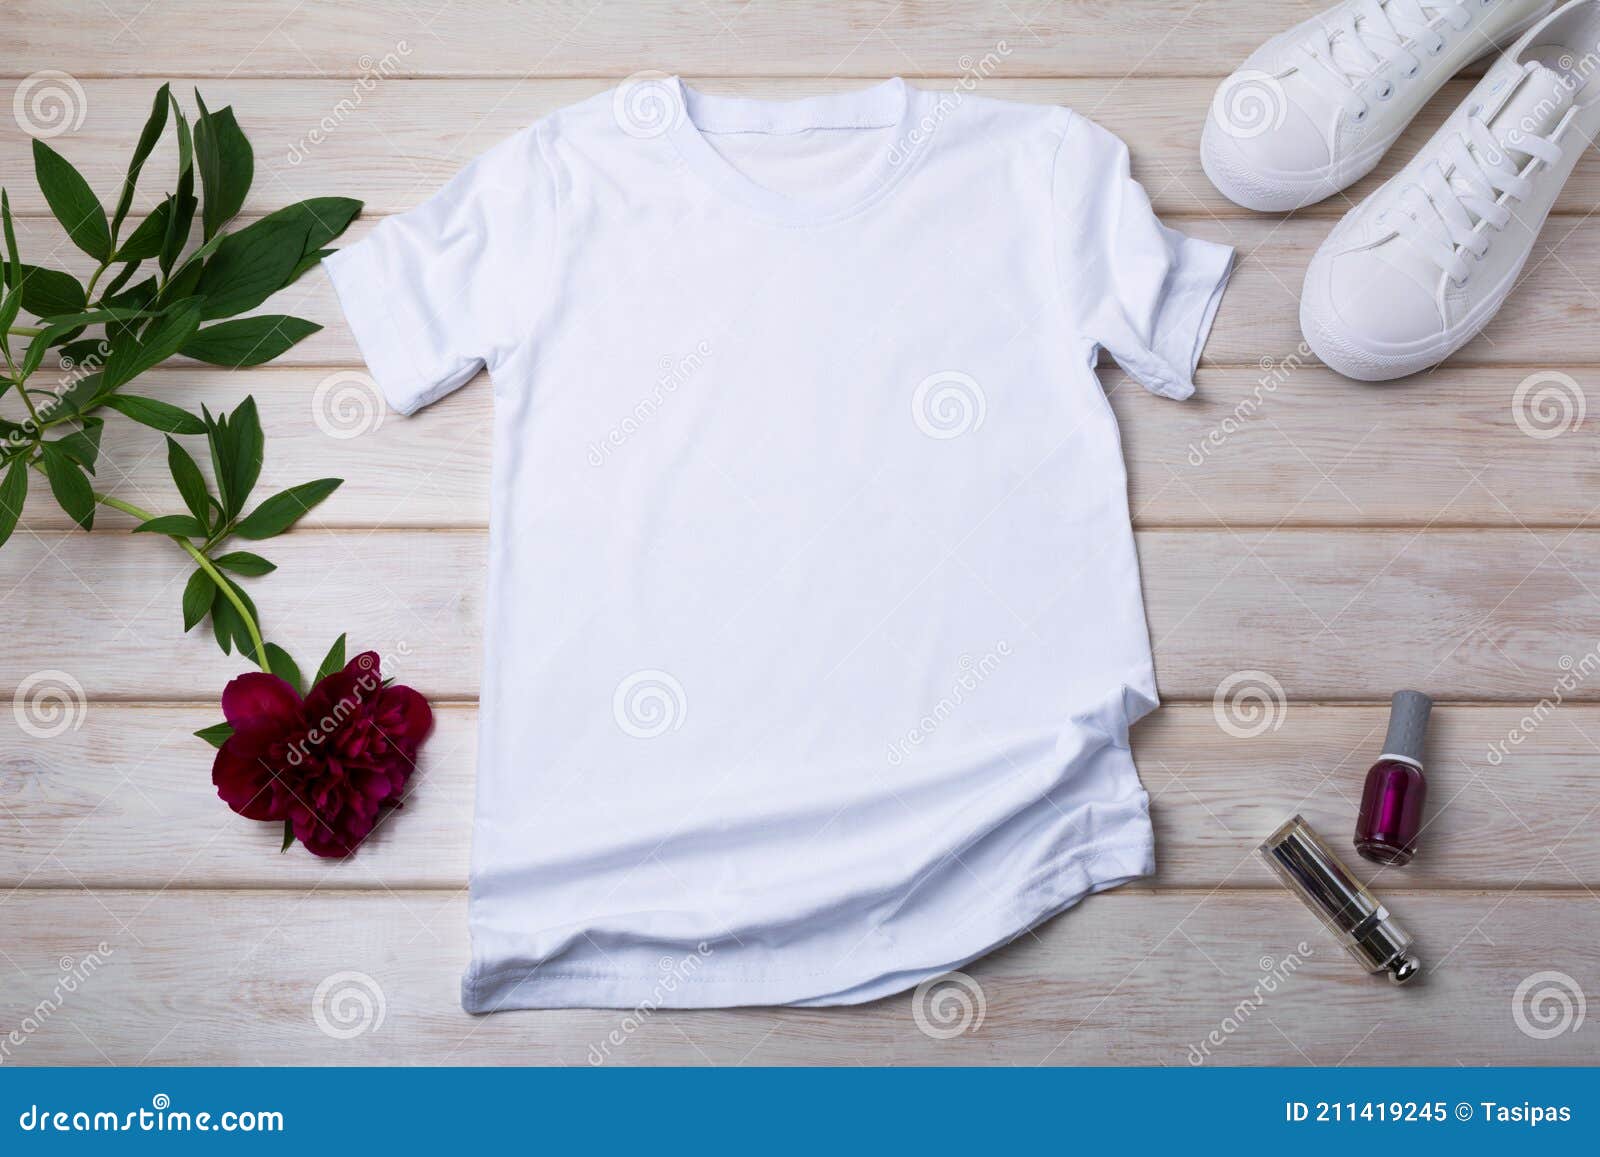 Mockup De Camiseta De Rsquo S Con Peony Burdeos Y Esmalte De Uñas Imagen de archivo - de mofa, copia: 211419245